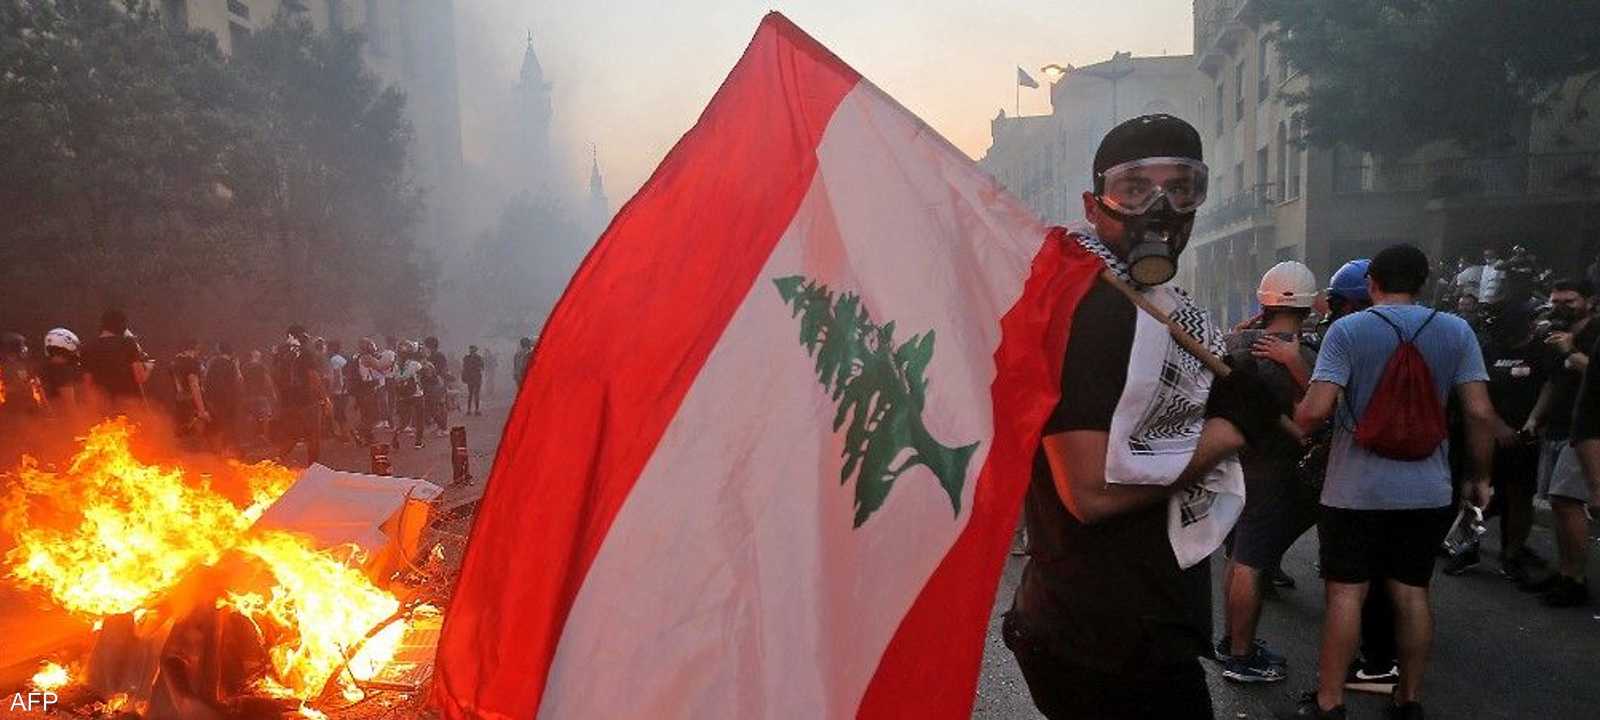 كساد اقتصاد لبنان يعرض الاستقرار والسلم الاجتماعي للخطر